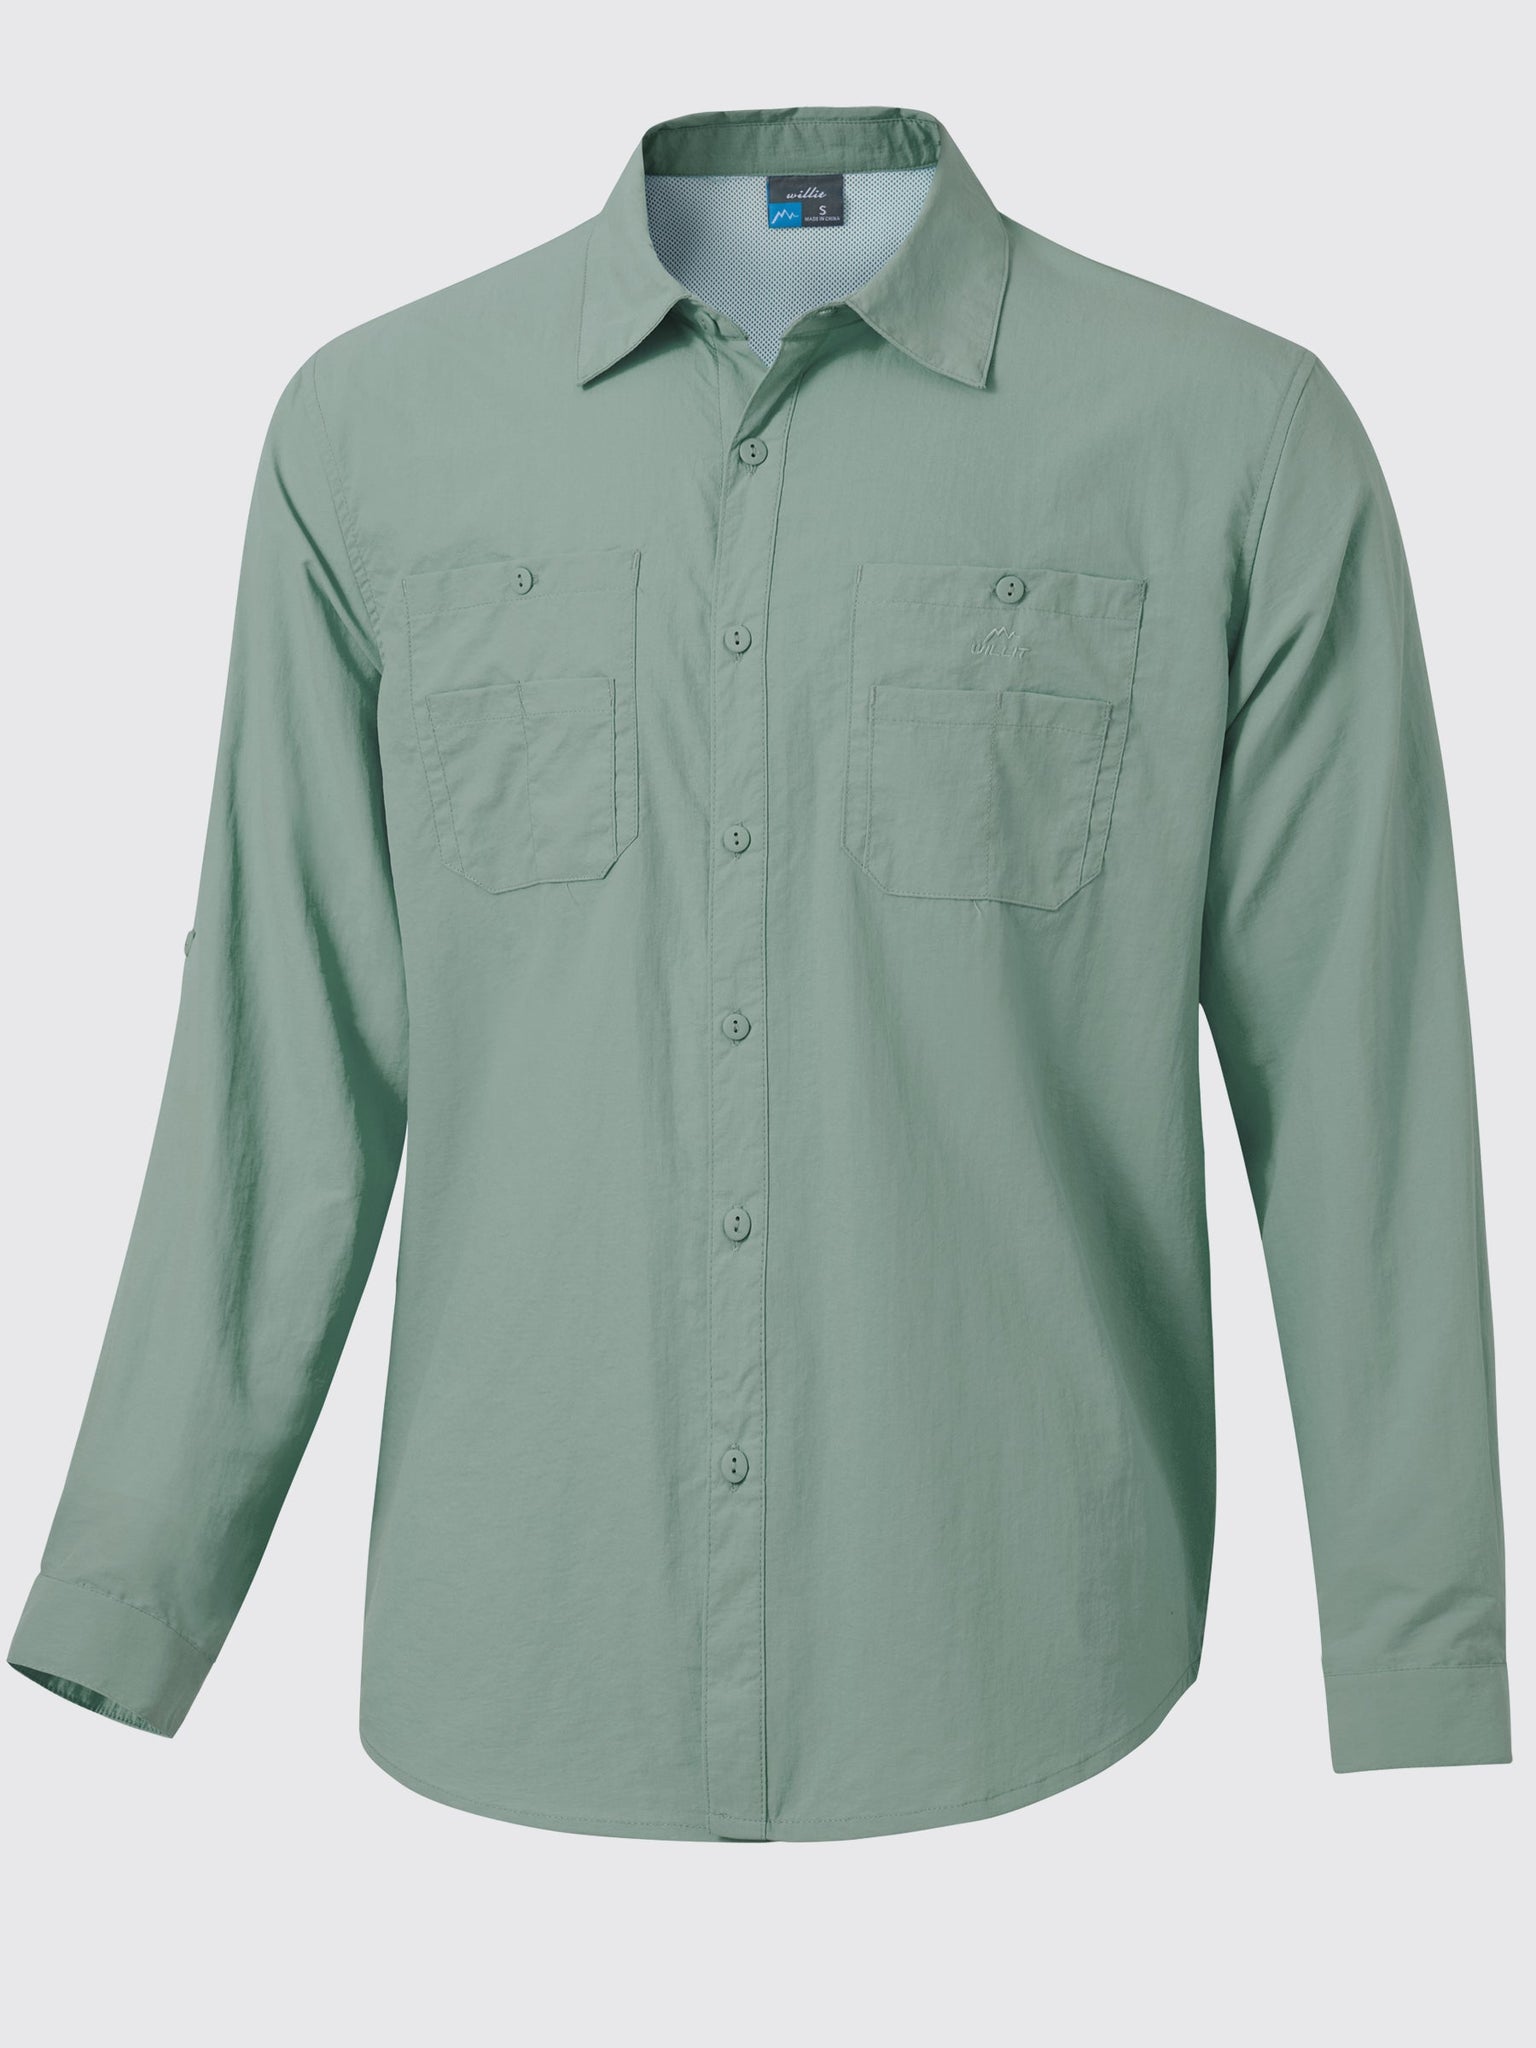 Men's Fishing Shirt Long Sleeve Hiking Shirts_SageGreen1